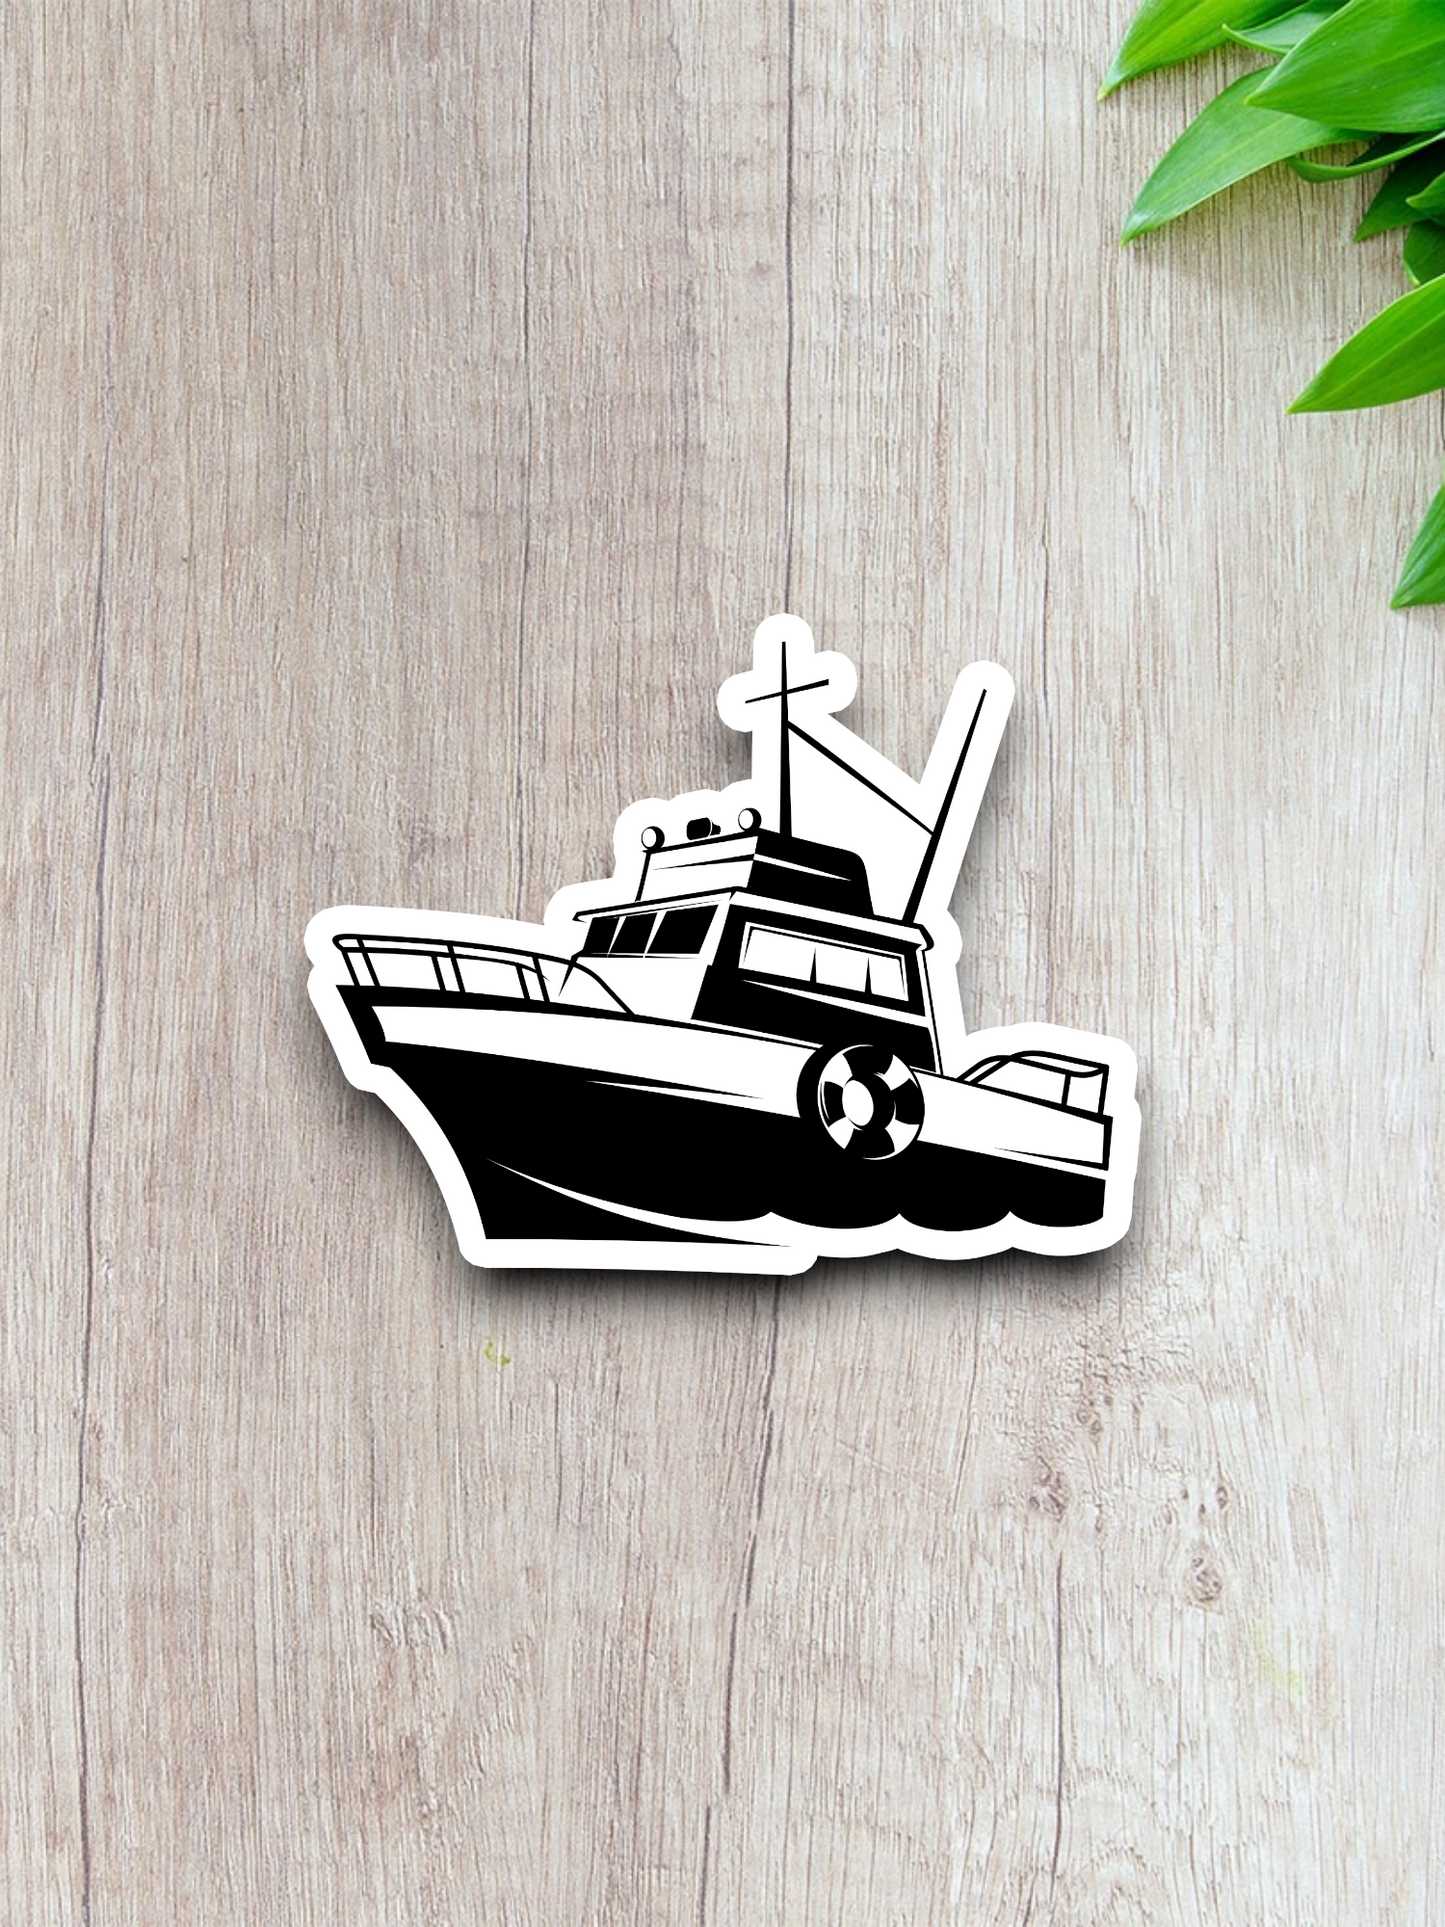 Fishing Boat Vehicle Sticker